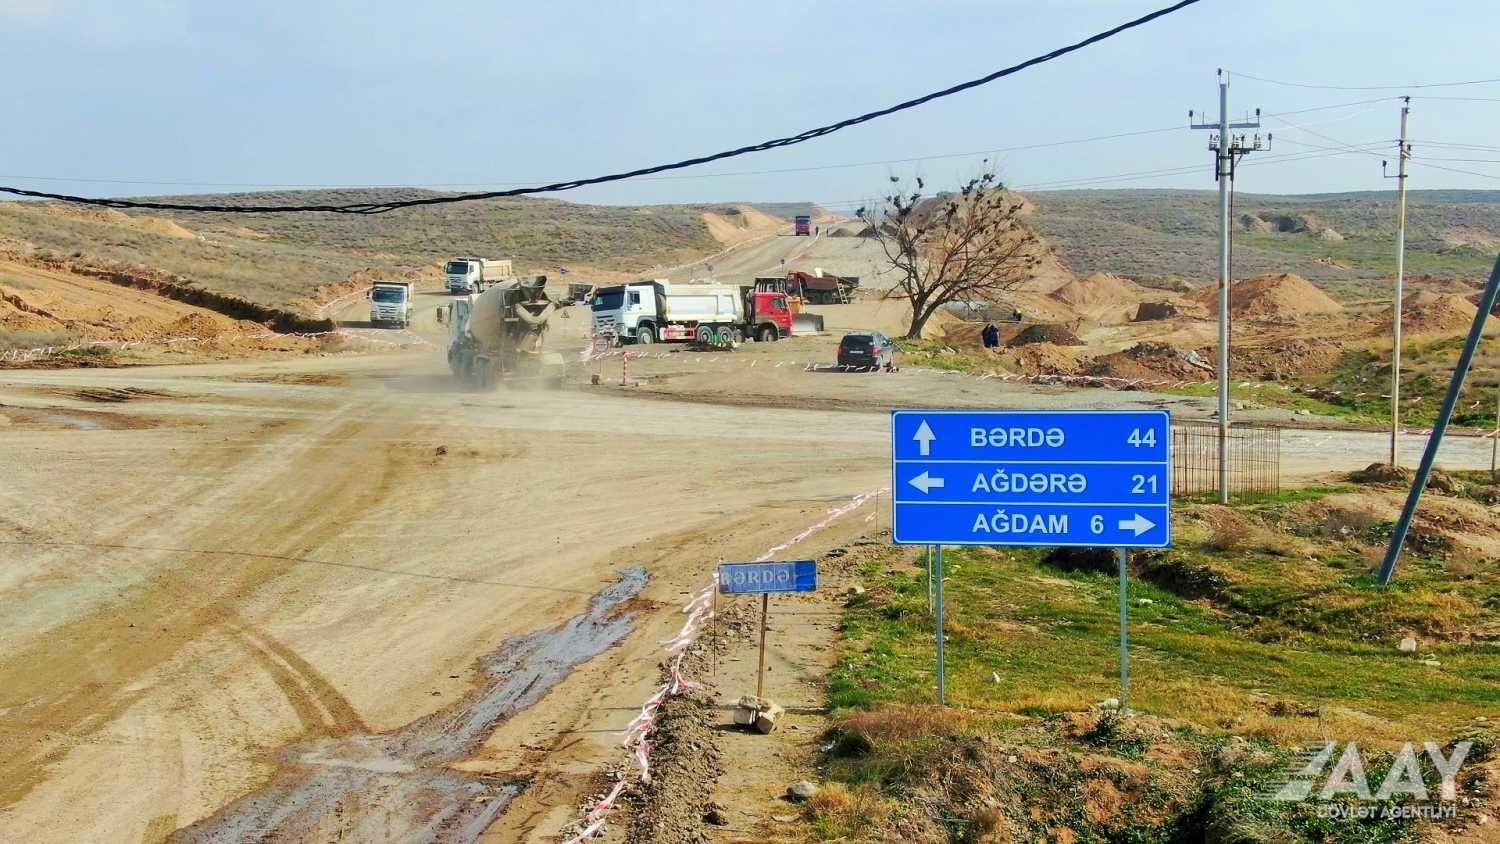 Əsgəran avtomobil yolunun inşasına start verilib